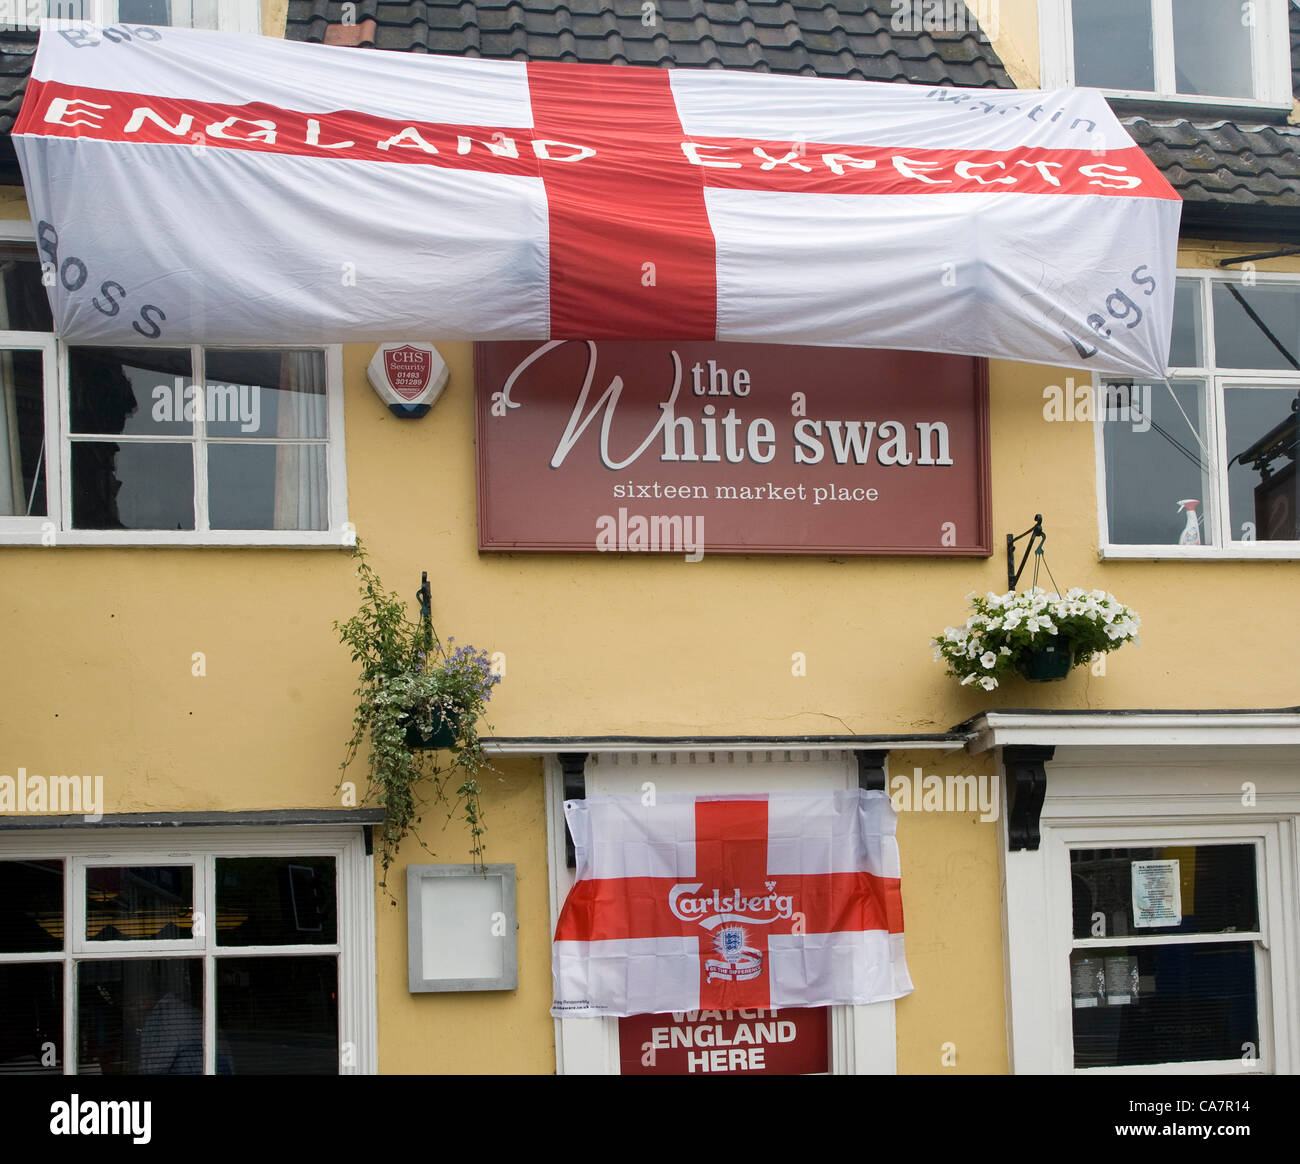 Bungay, Suffolk, UK. Samstag, 23. Juni 2012. "England erwartet, dass" Nachricht auf eine riesige St. Georgs-Flagge wird auf weißen Schwan gehängt. Stockfoto